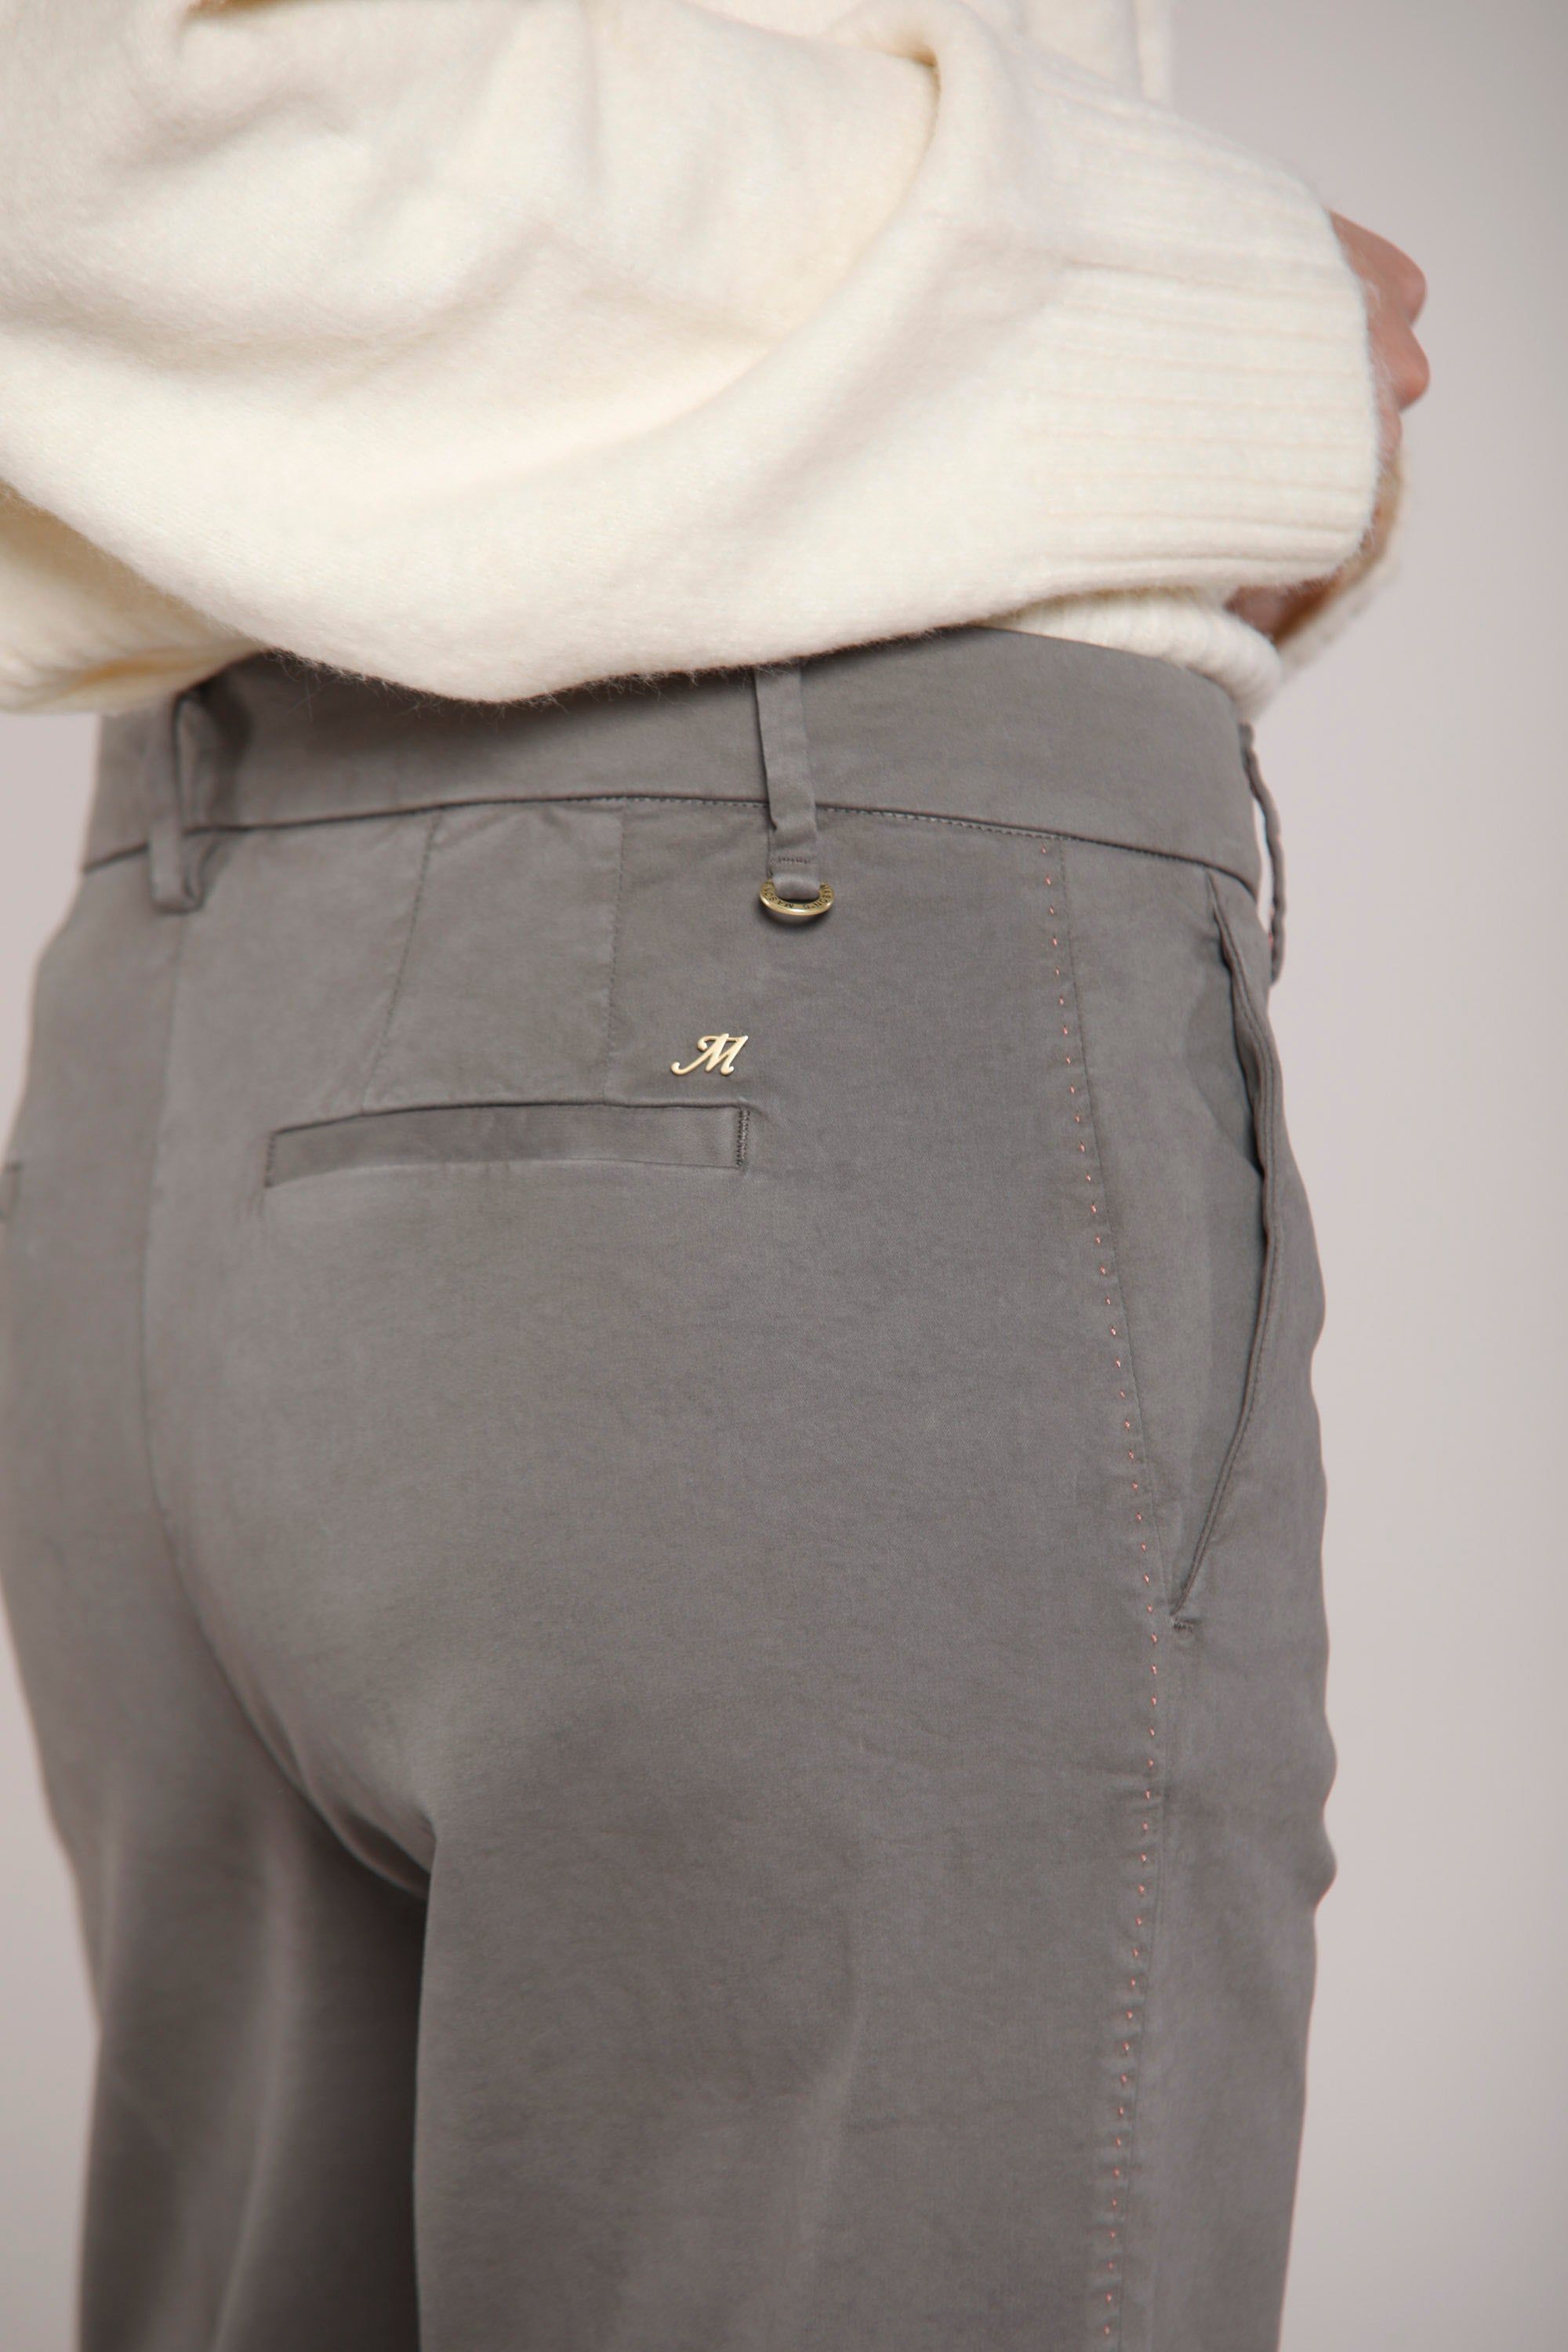 Image 5 du pantalon chino femme en satin gris foncé modèle New York Straight par Mason's